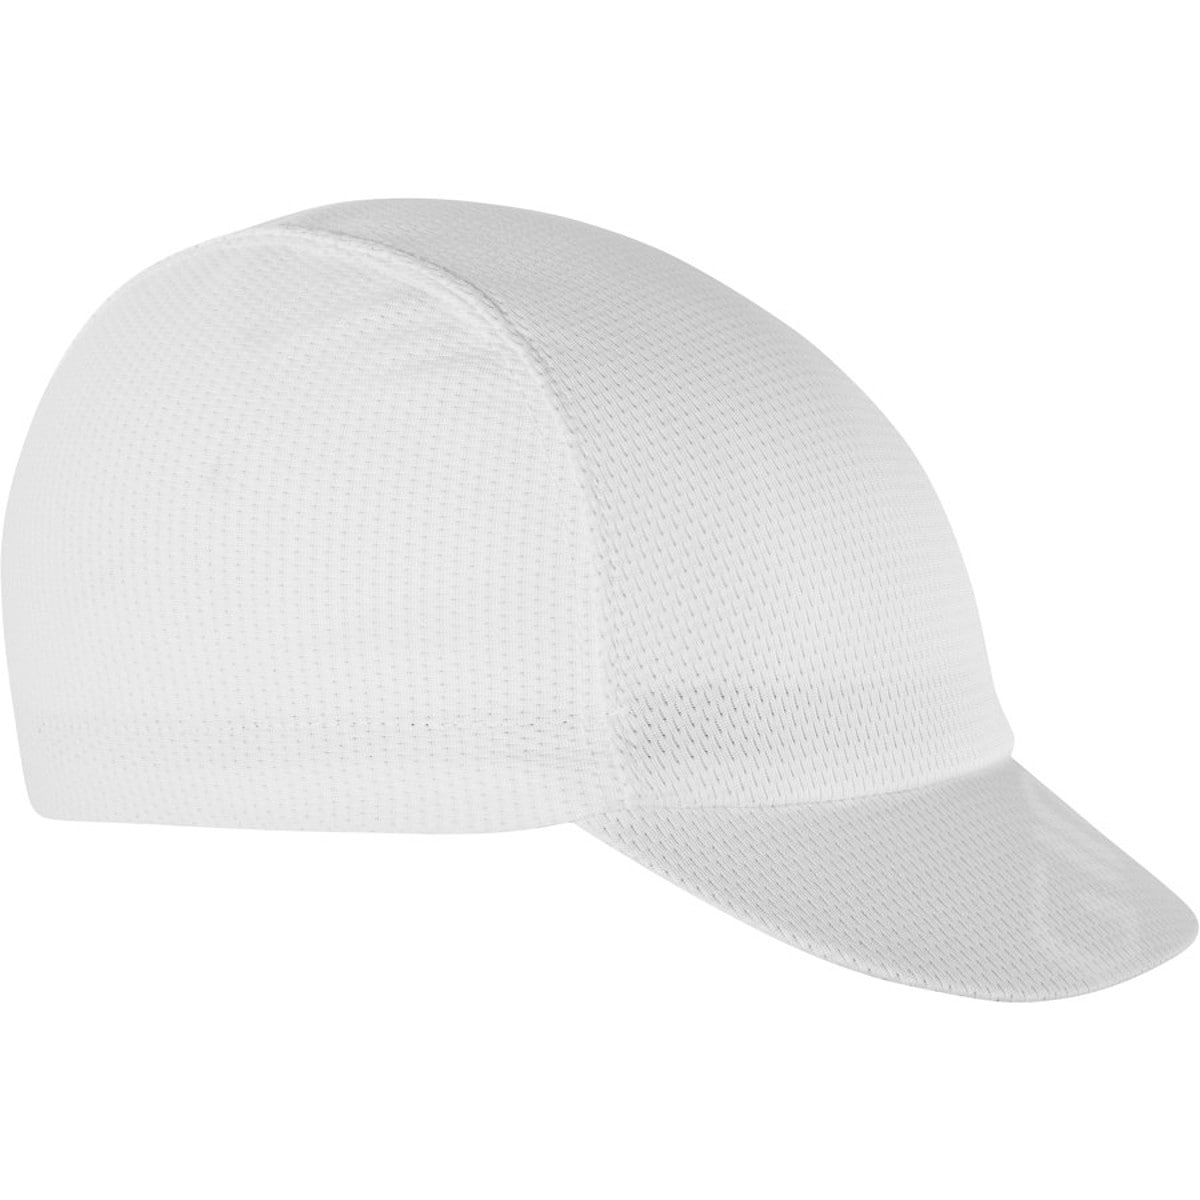 Giro SPF Ultralight Cap Pure White, One Size